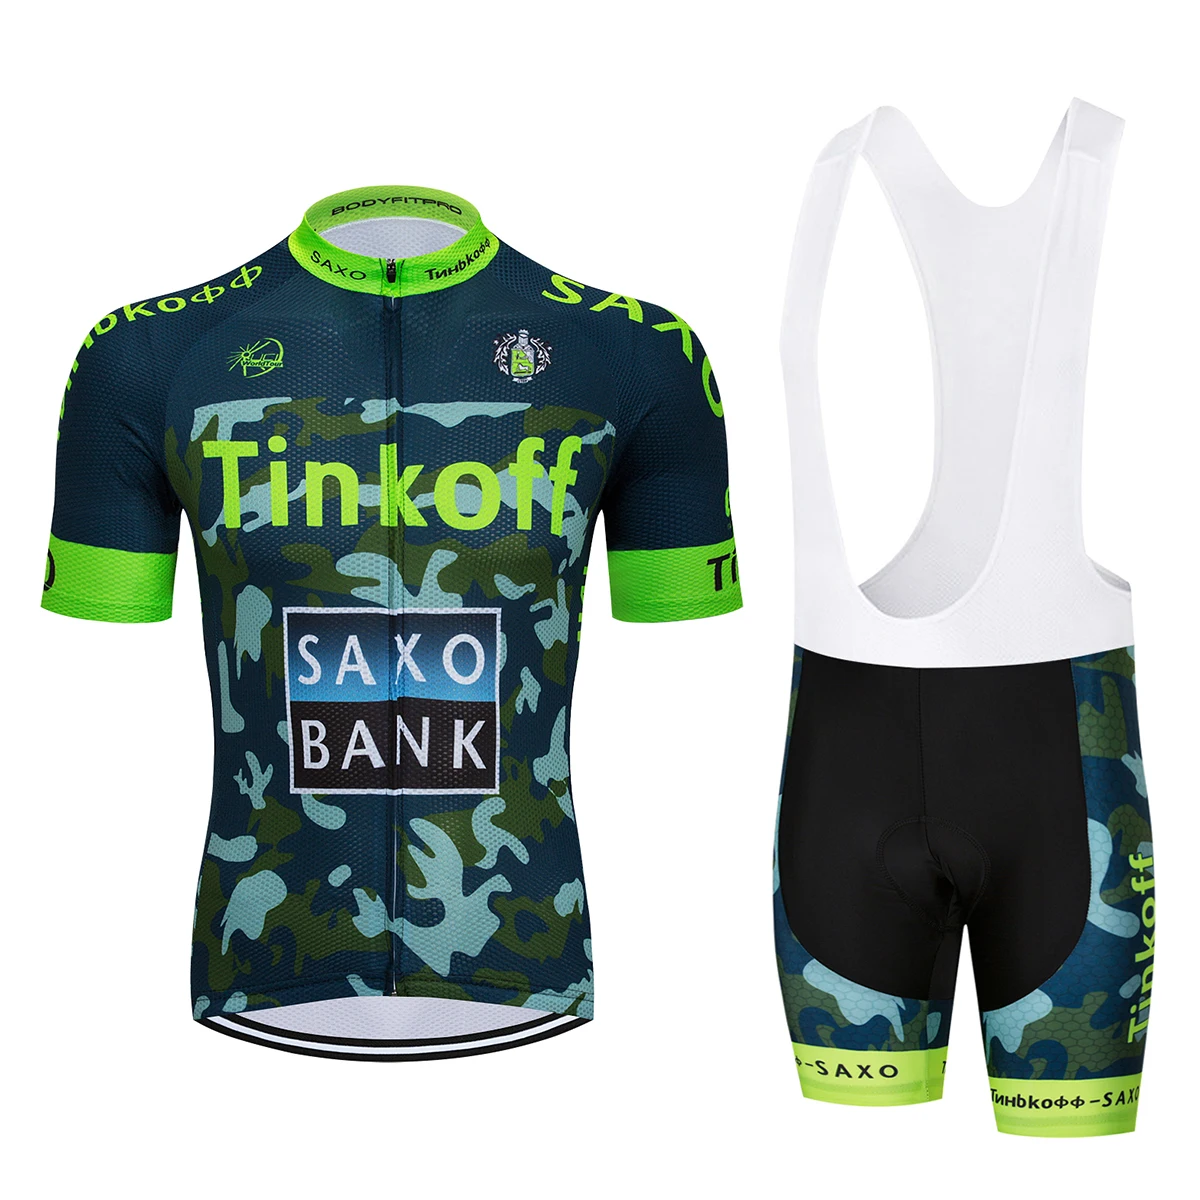 Прямые продажи с фабрики! SaxoBank Tinkoff велосипедная майка/быстросохнущая Ropa Ciclismo велосипедная одежда/дышащая велосипедная спортивная одежда